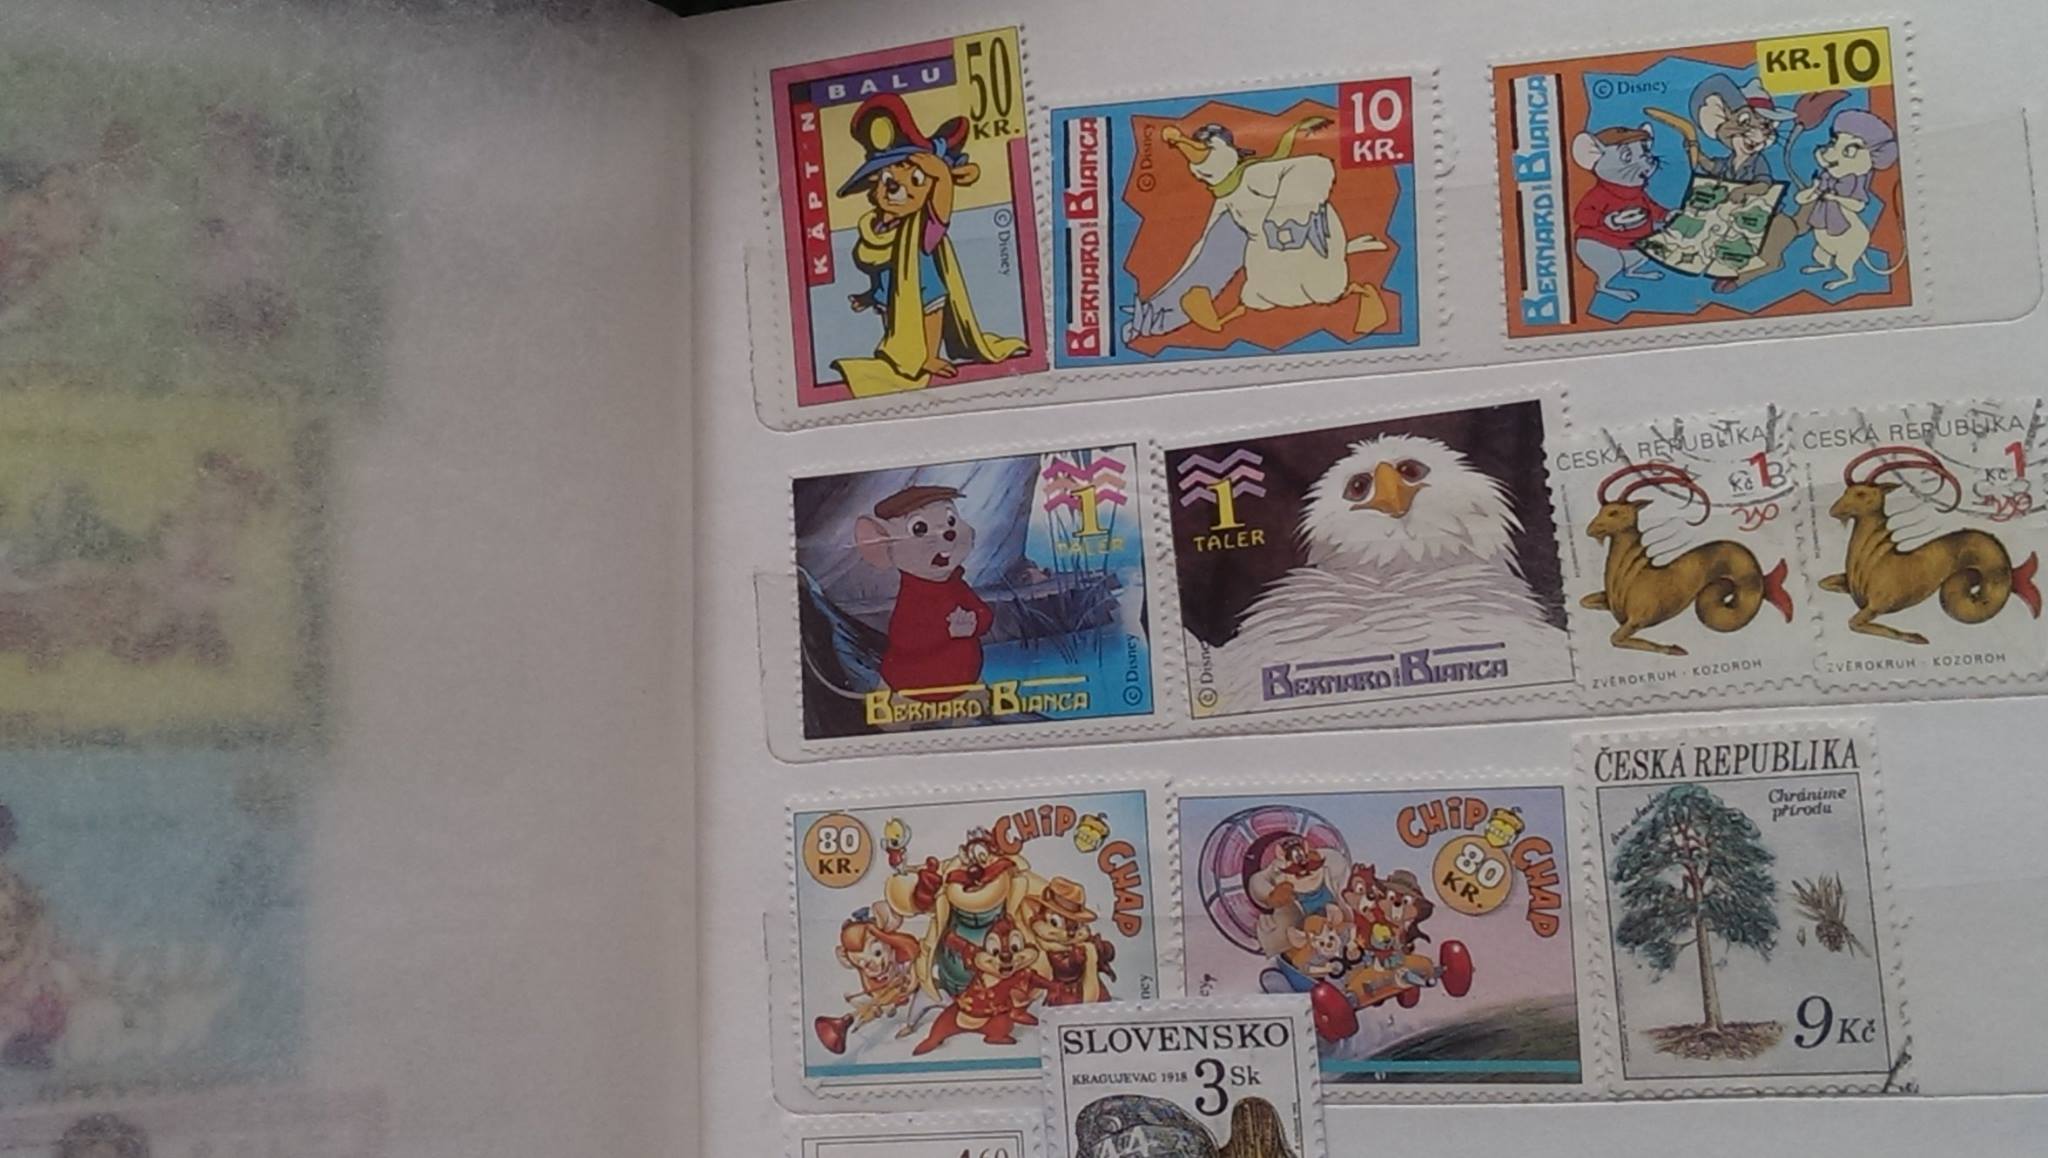 Poštovní známky s Disney seriály 4